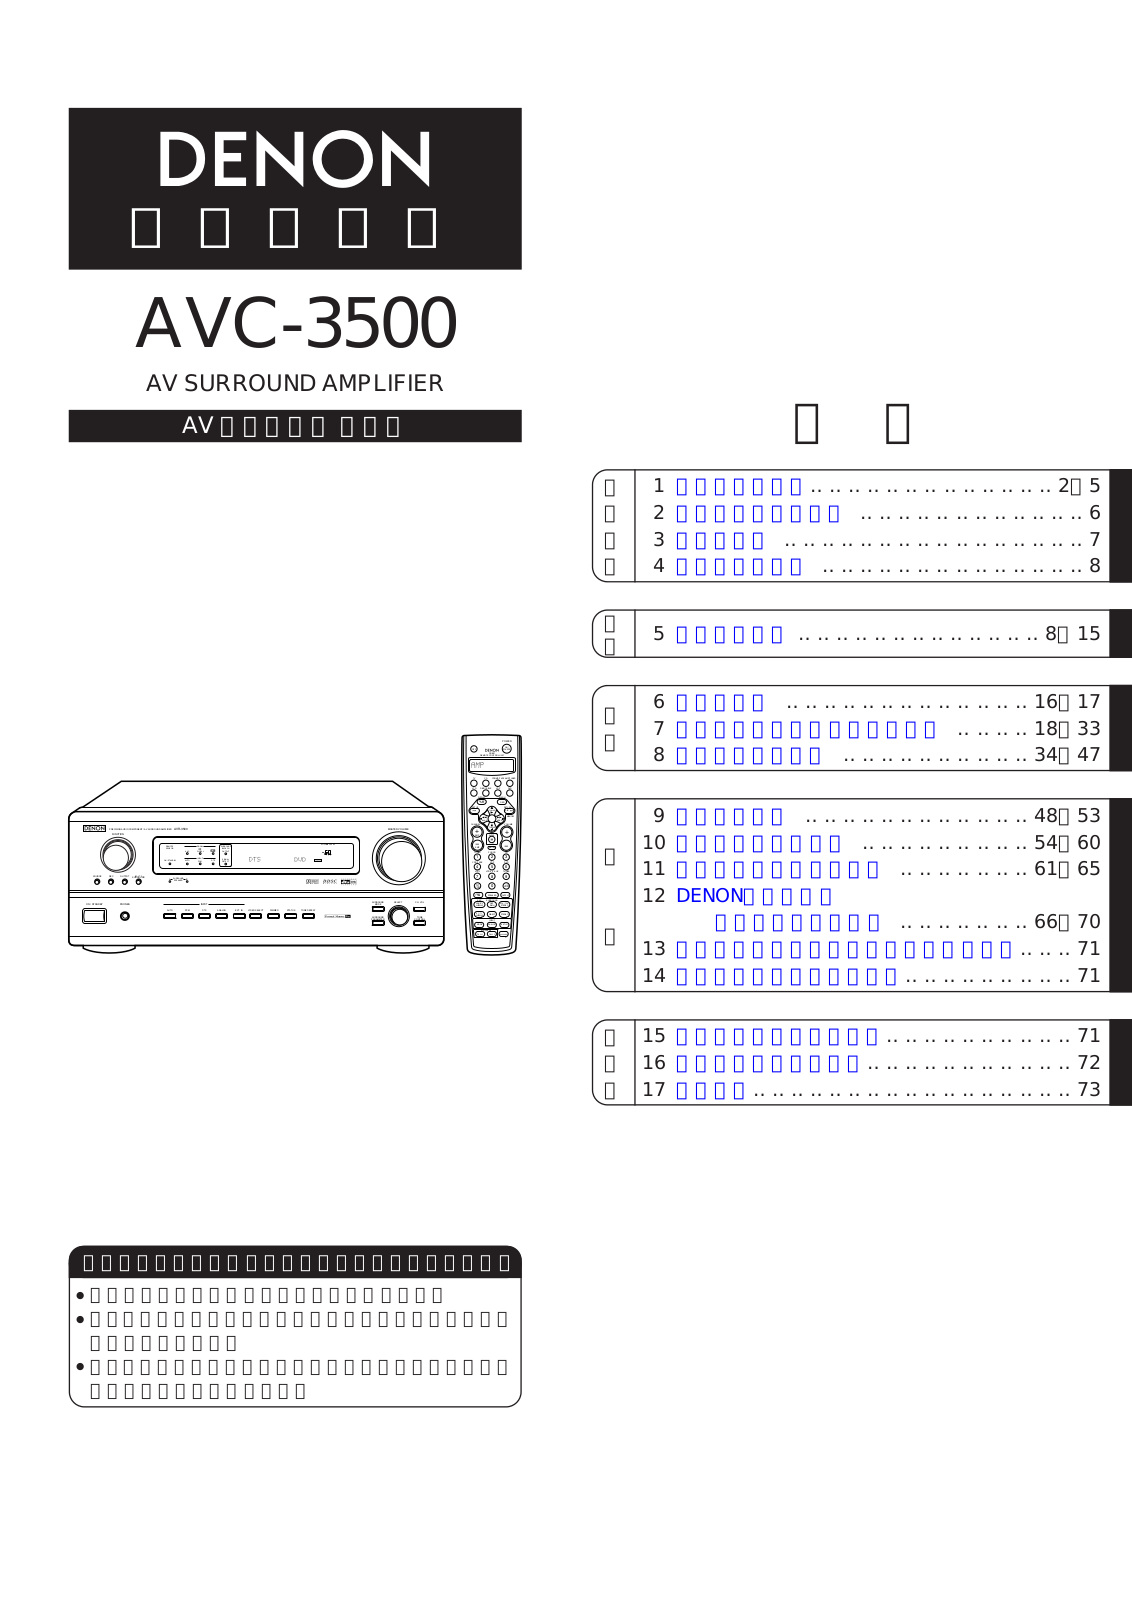 Denon AVC-3500 Owner's Manual